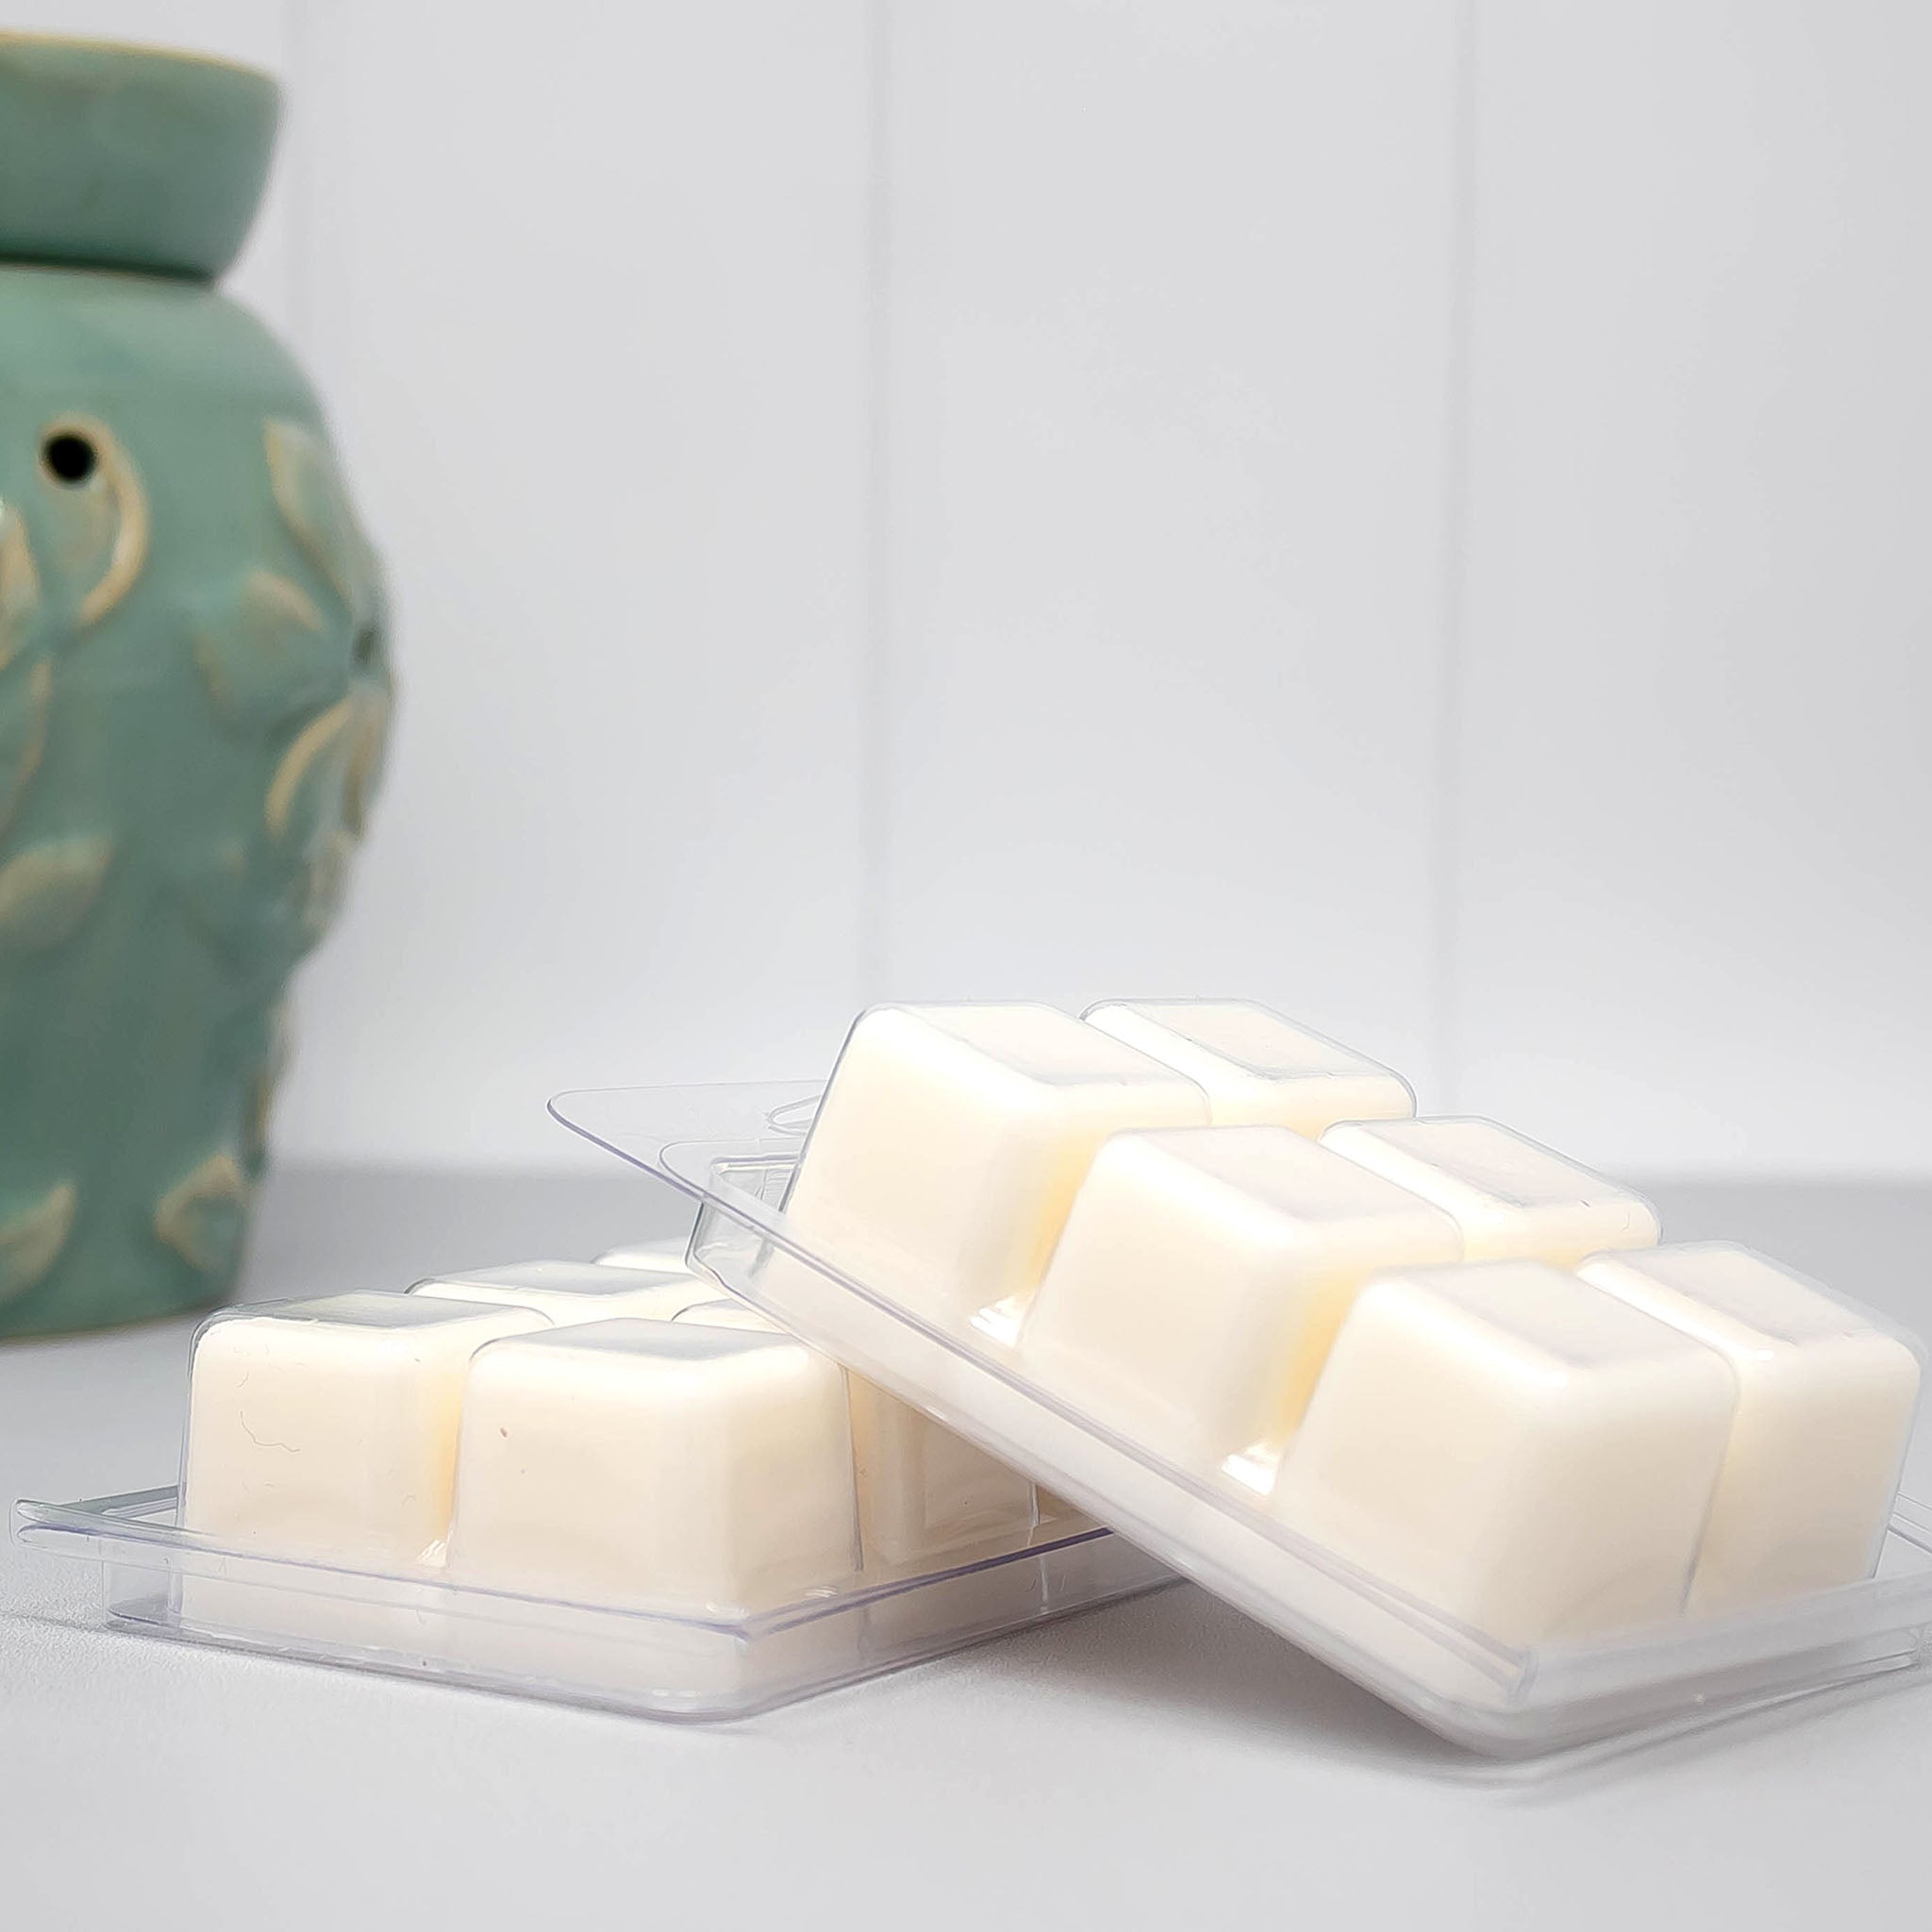 Fraser Fir Soy Wax Melts Wax Cubes Natural Wax Melts Wax Melts Phthalate  Free Dye Free 